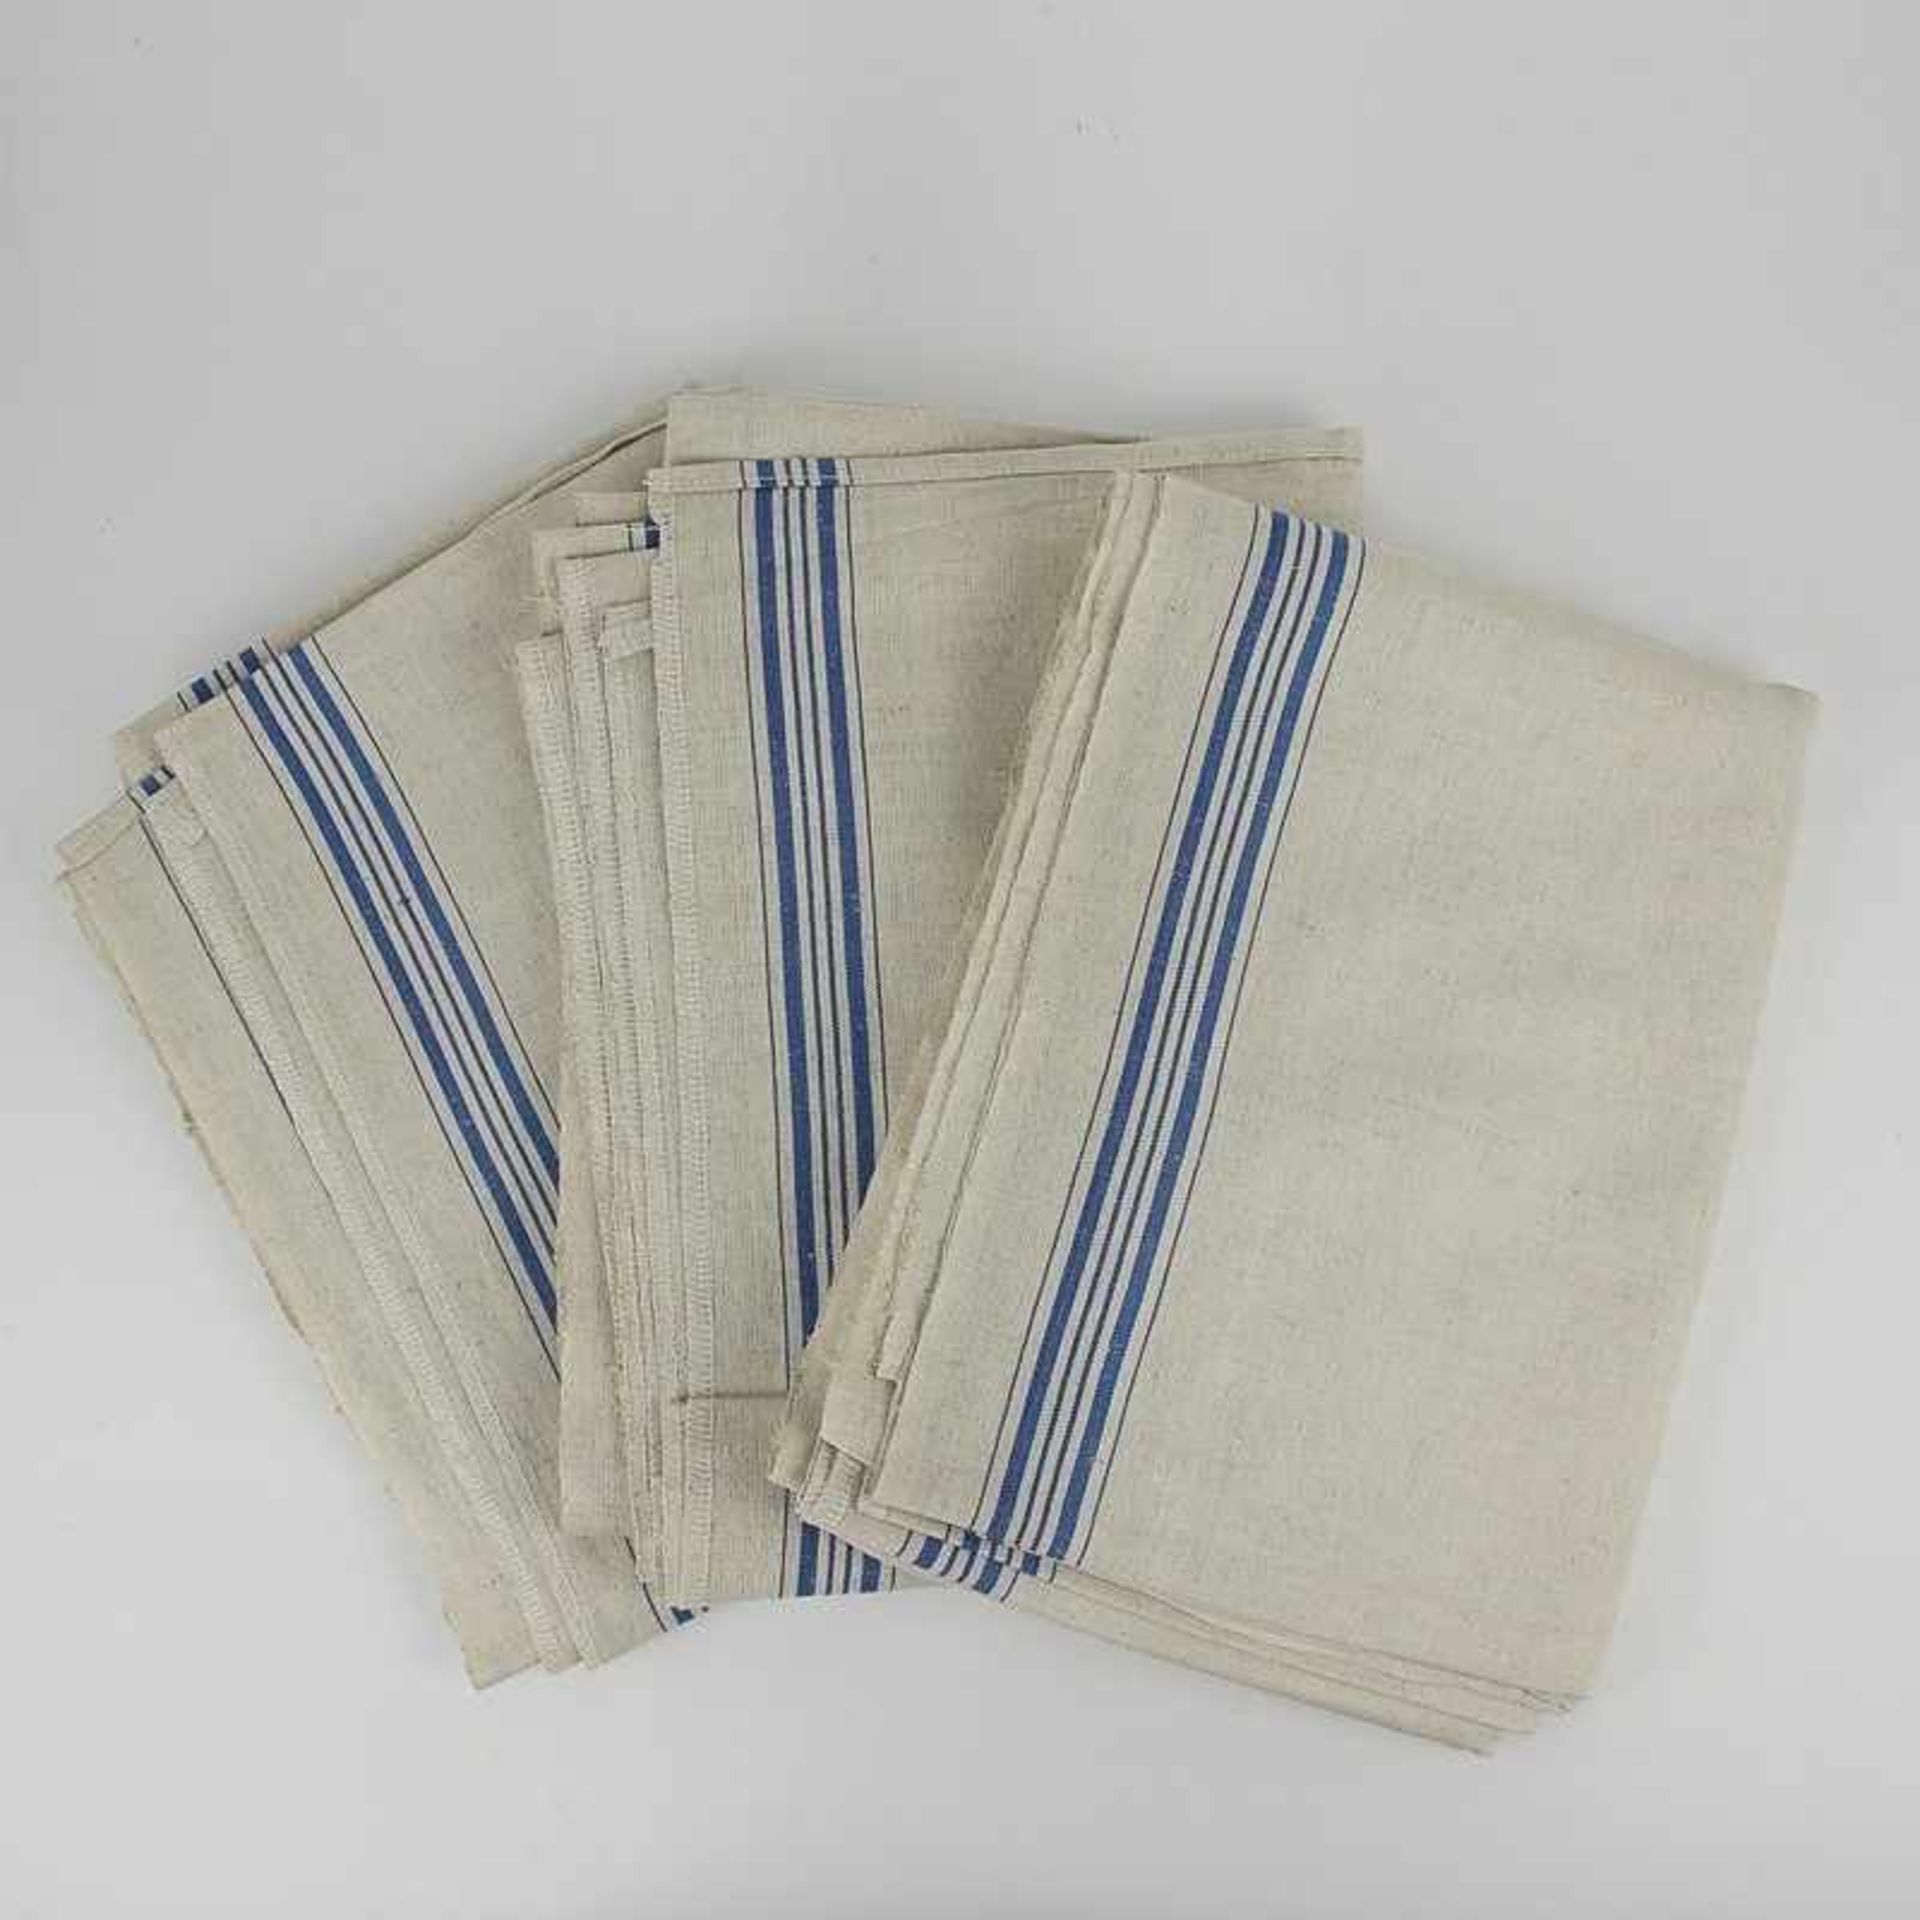 Mangeltücher - Drei Stück um 1930, helles Leinen, blaue Streifen, ungewaschen, 88x240cm